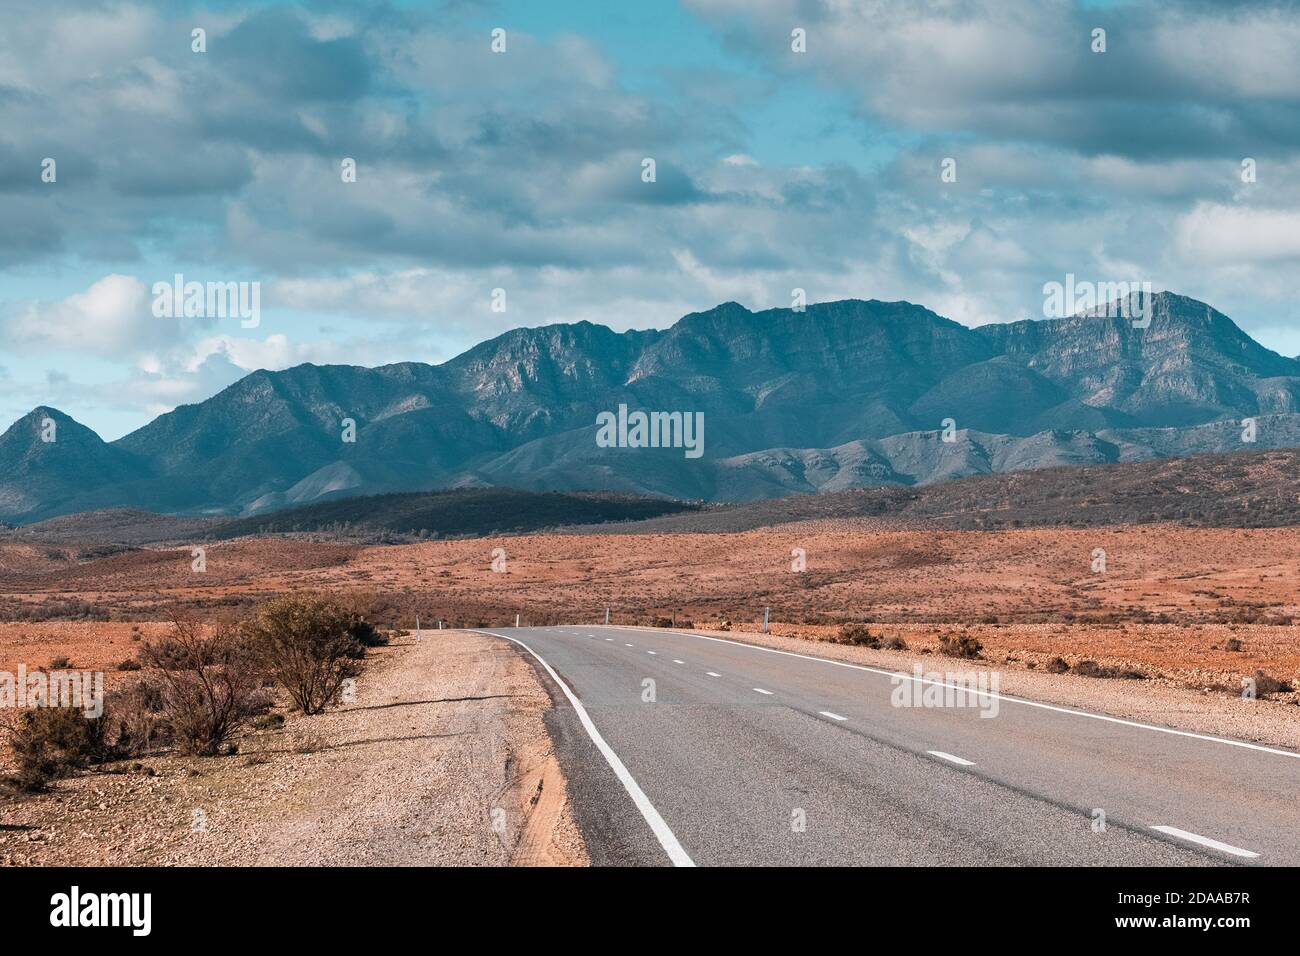 Parco Nazionale delle catene montuose di Ikara Flinders. Strada panoramica in direzione delle montagne. Niente auto, niente persone nella foto. Cielo nuvoloso drammatico. Nome aborigeno: Foto Stock